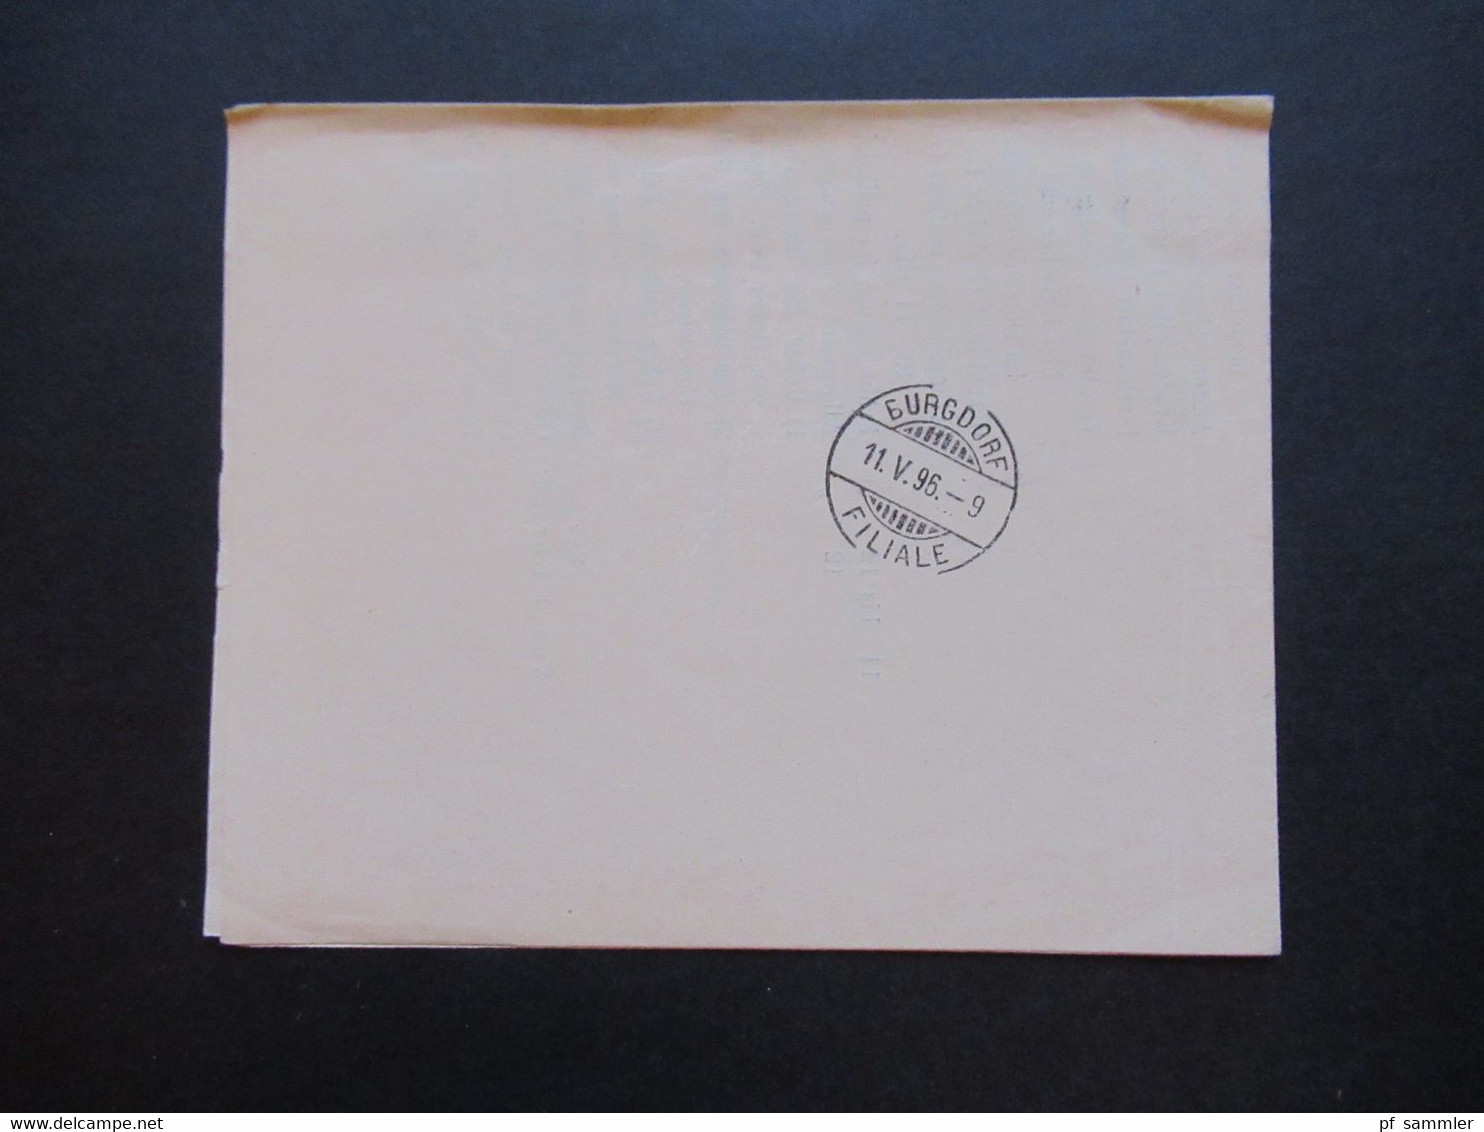 Schweiz 1896 Nr. 50 EF Drucksache Einladung zur LI. Versammlung des ärztlichen Centralvereins im Bernoullianum in Basel